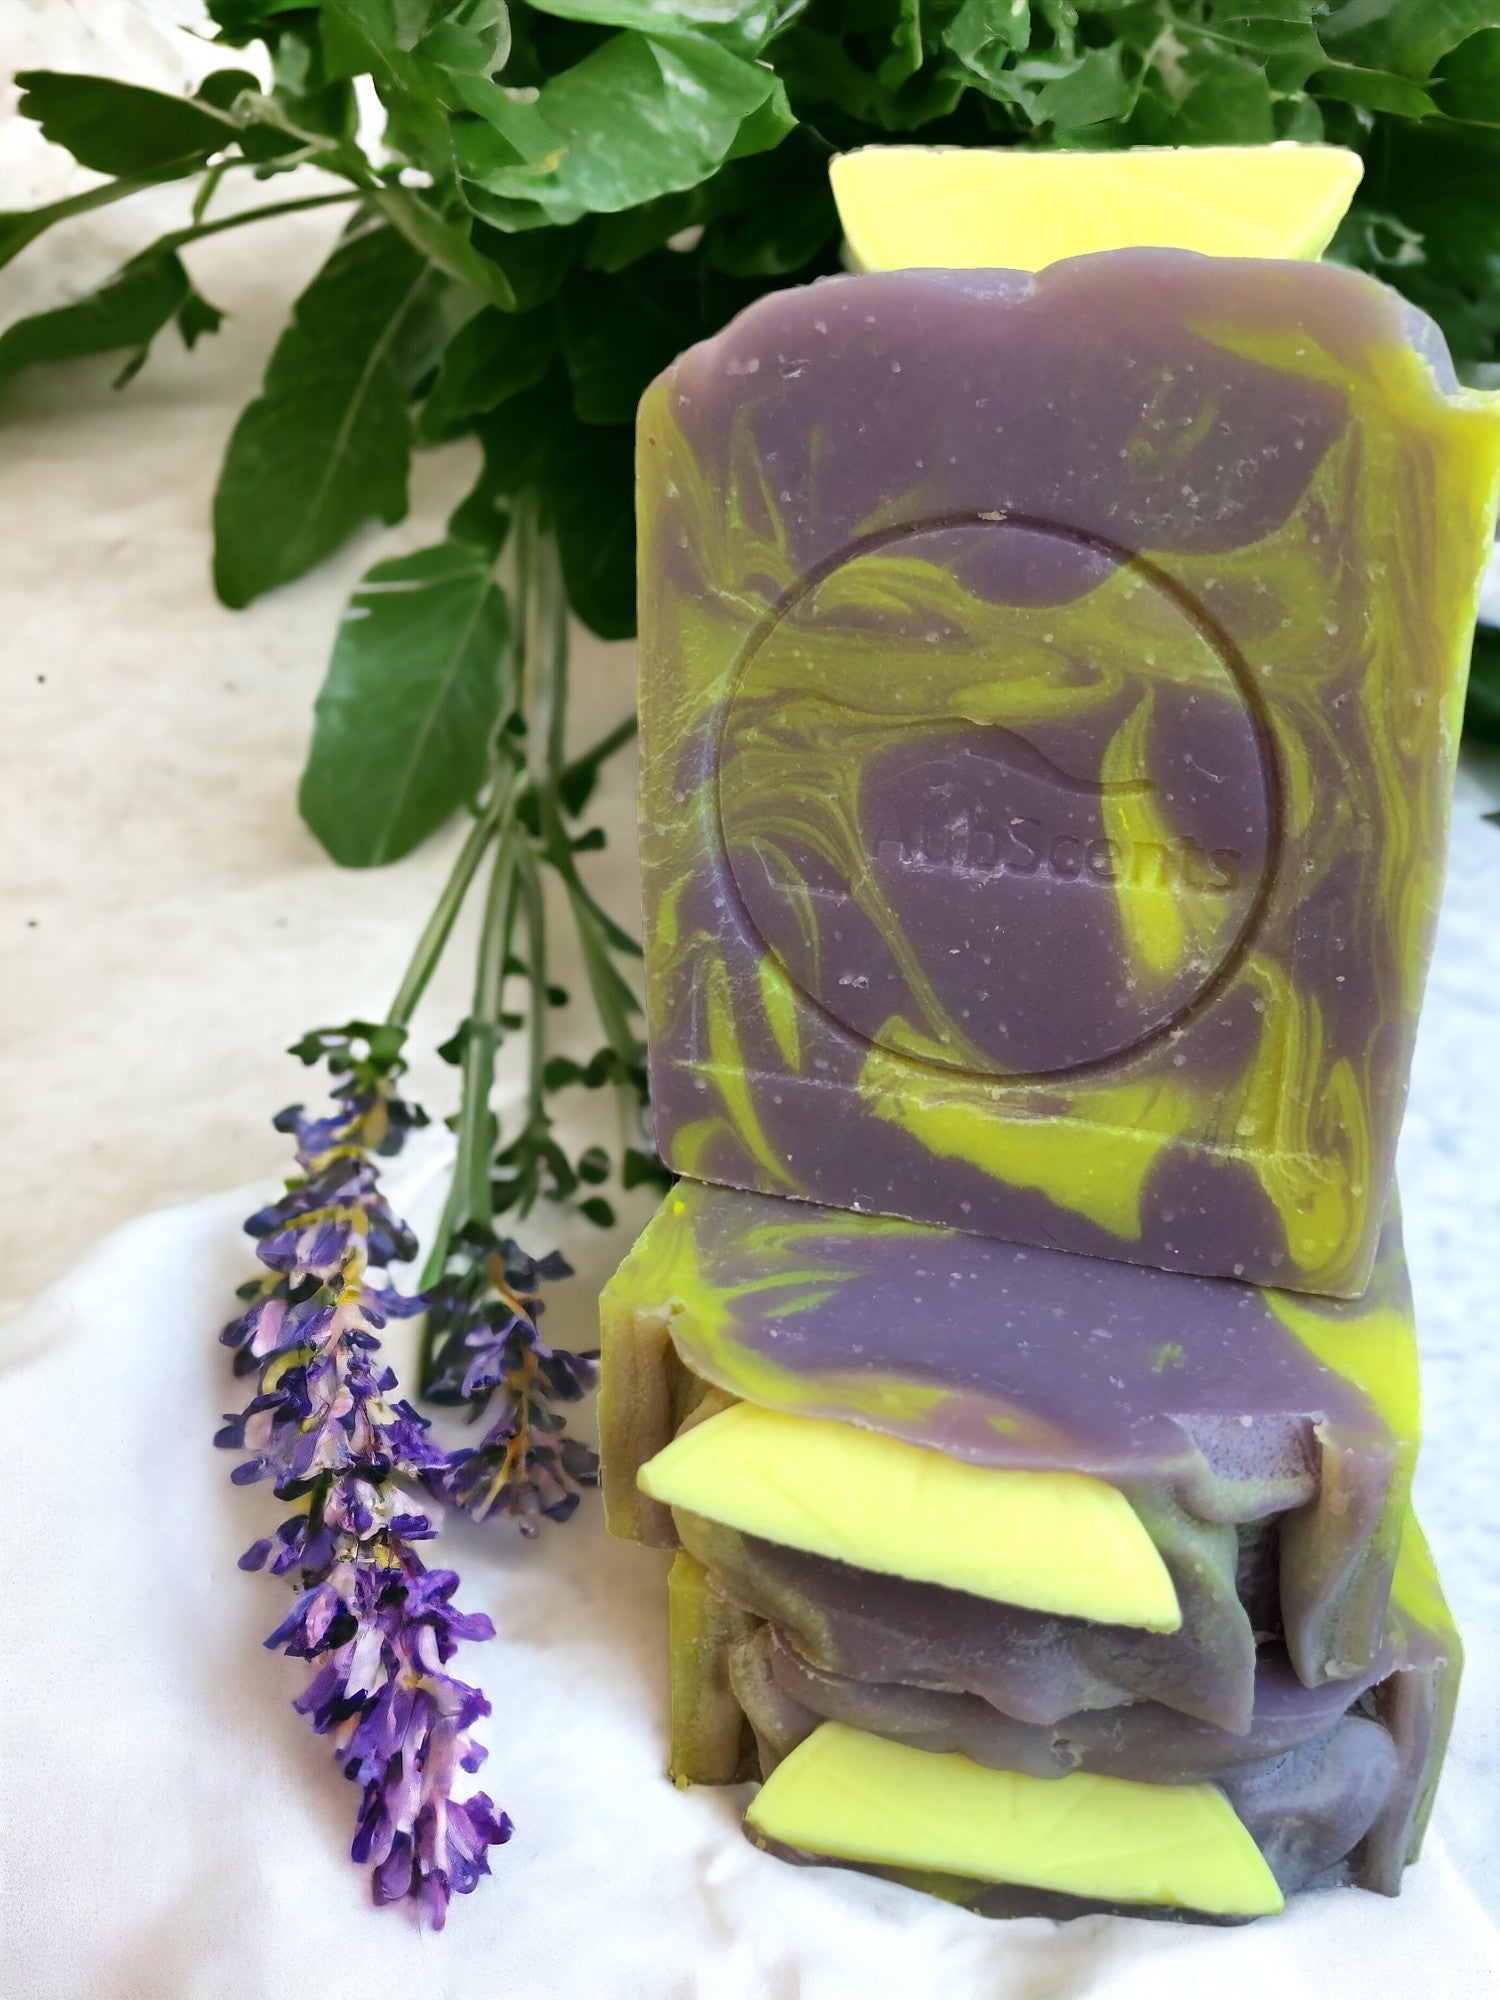 lavender lemon soap